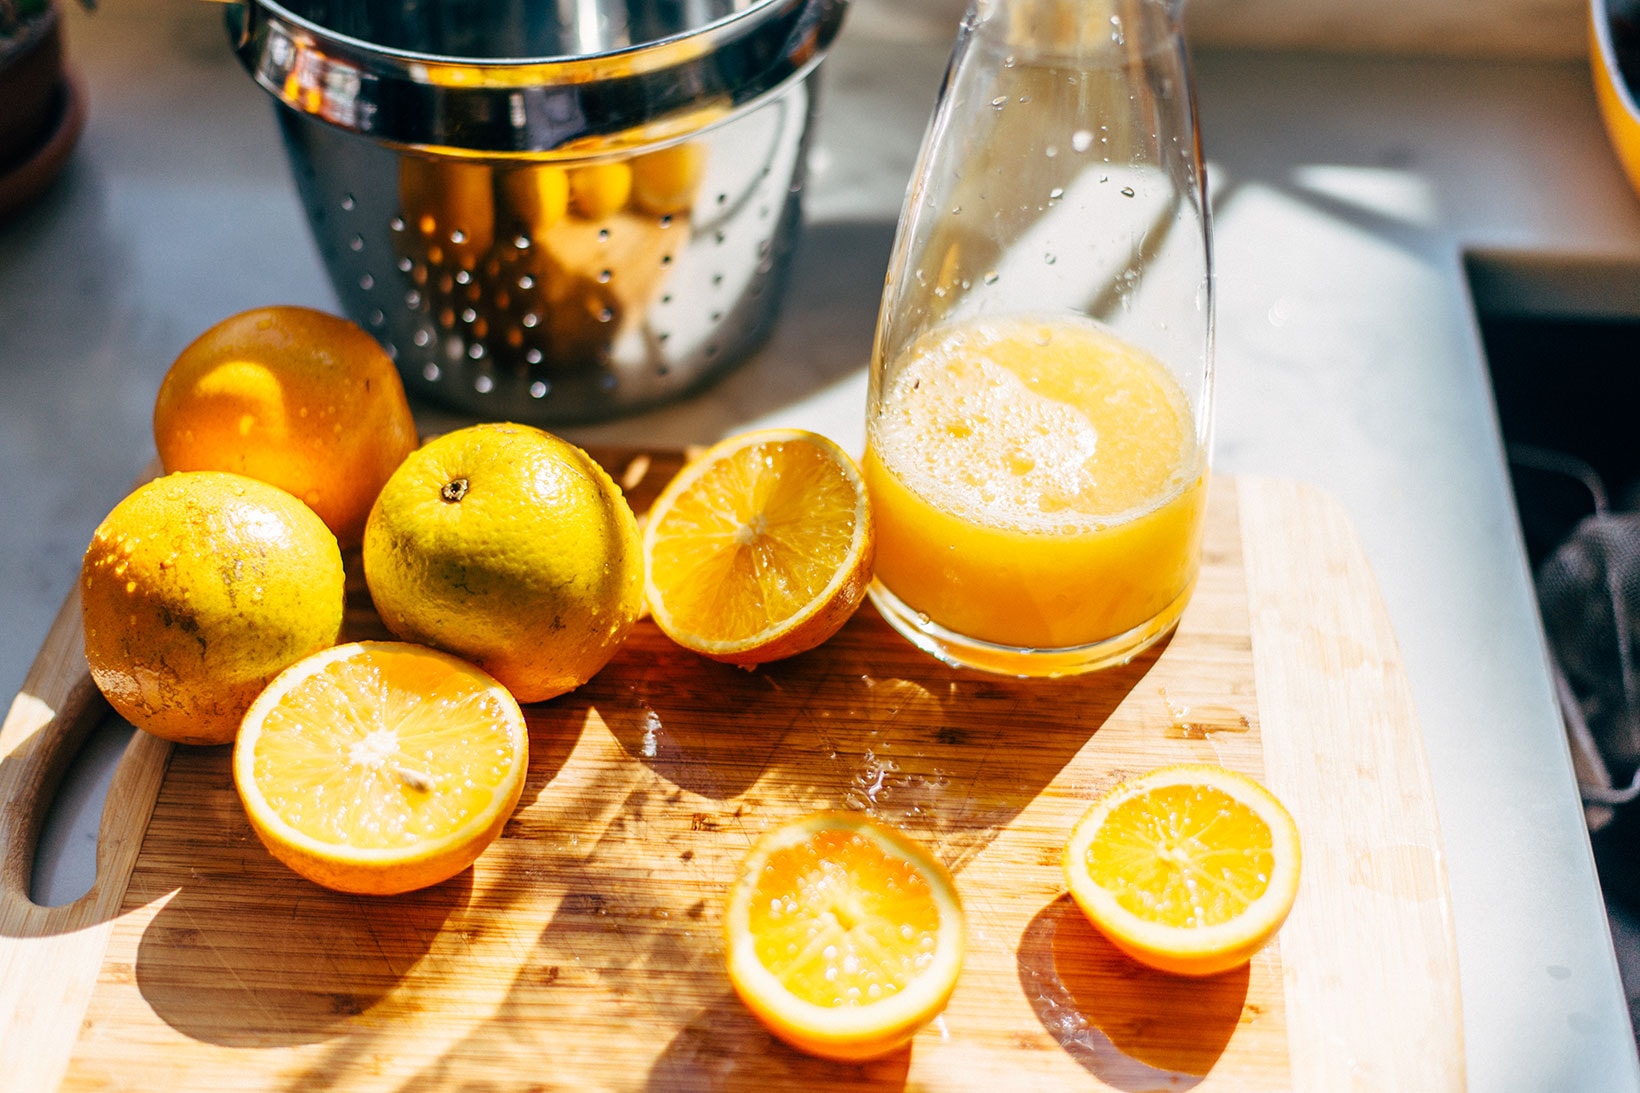 easy healthy juice recipes beginner diet detox cleanse fruit vegetables